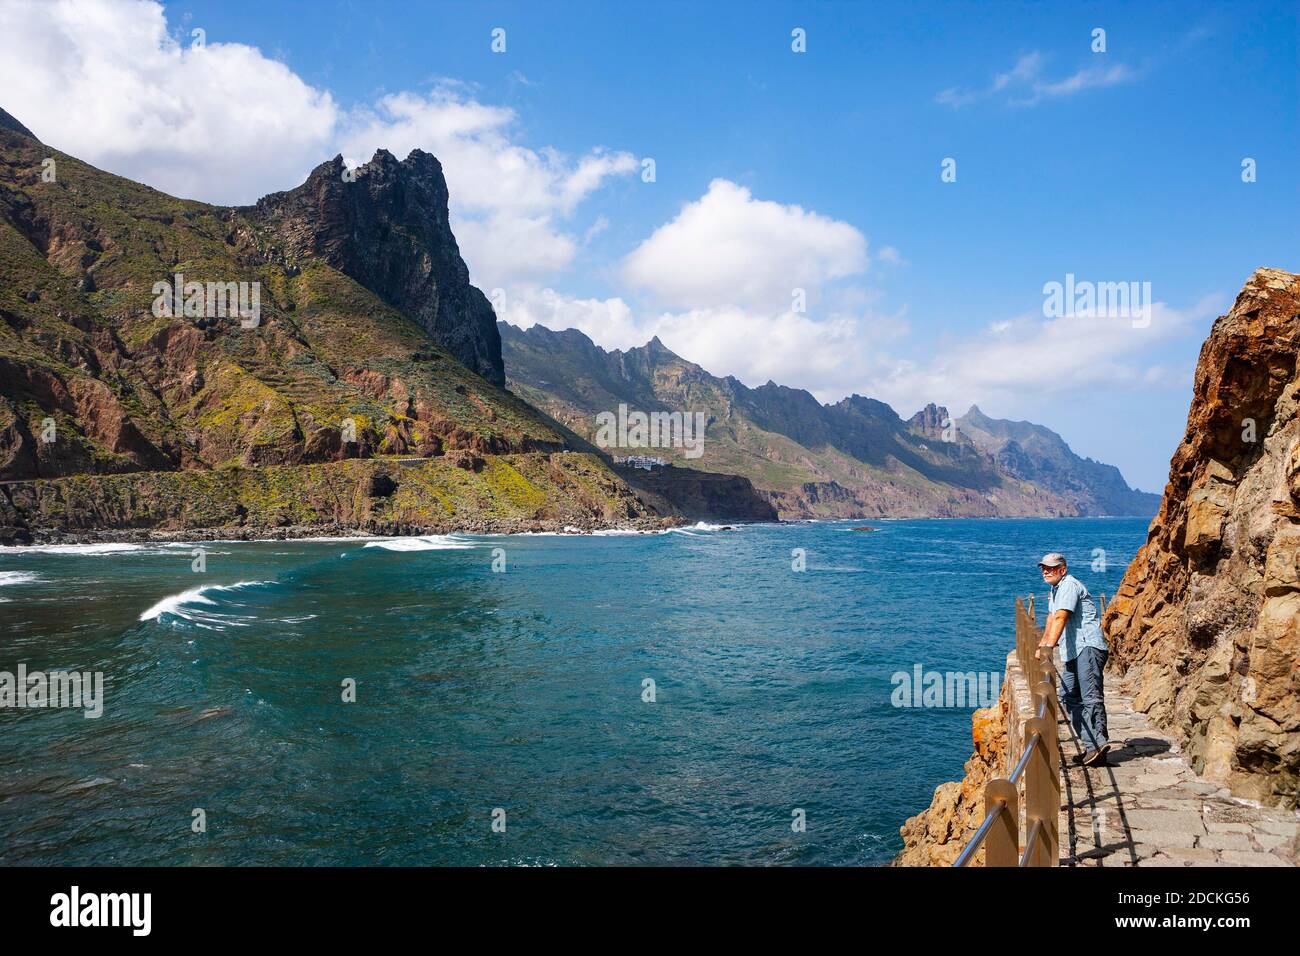 Côte escarpée dans les montagnes Anaga avec plage Playa de Roque de las Bodegas près du canton de Taganana, Almaciga, Tenerife, Canaries Banque D'Images